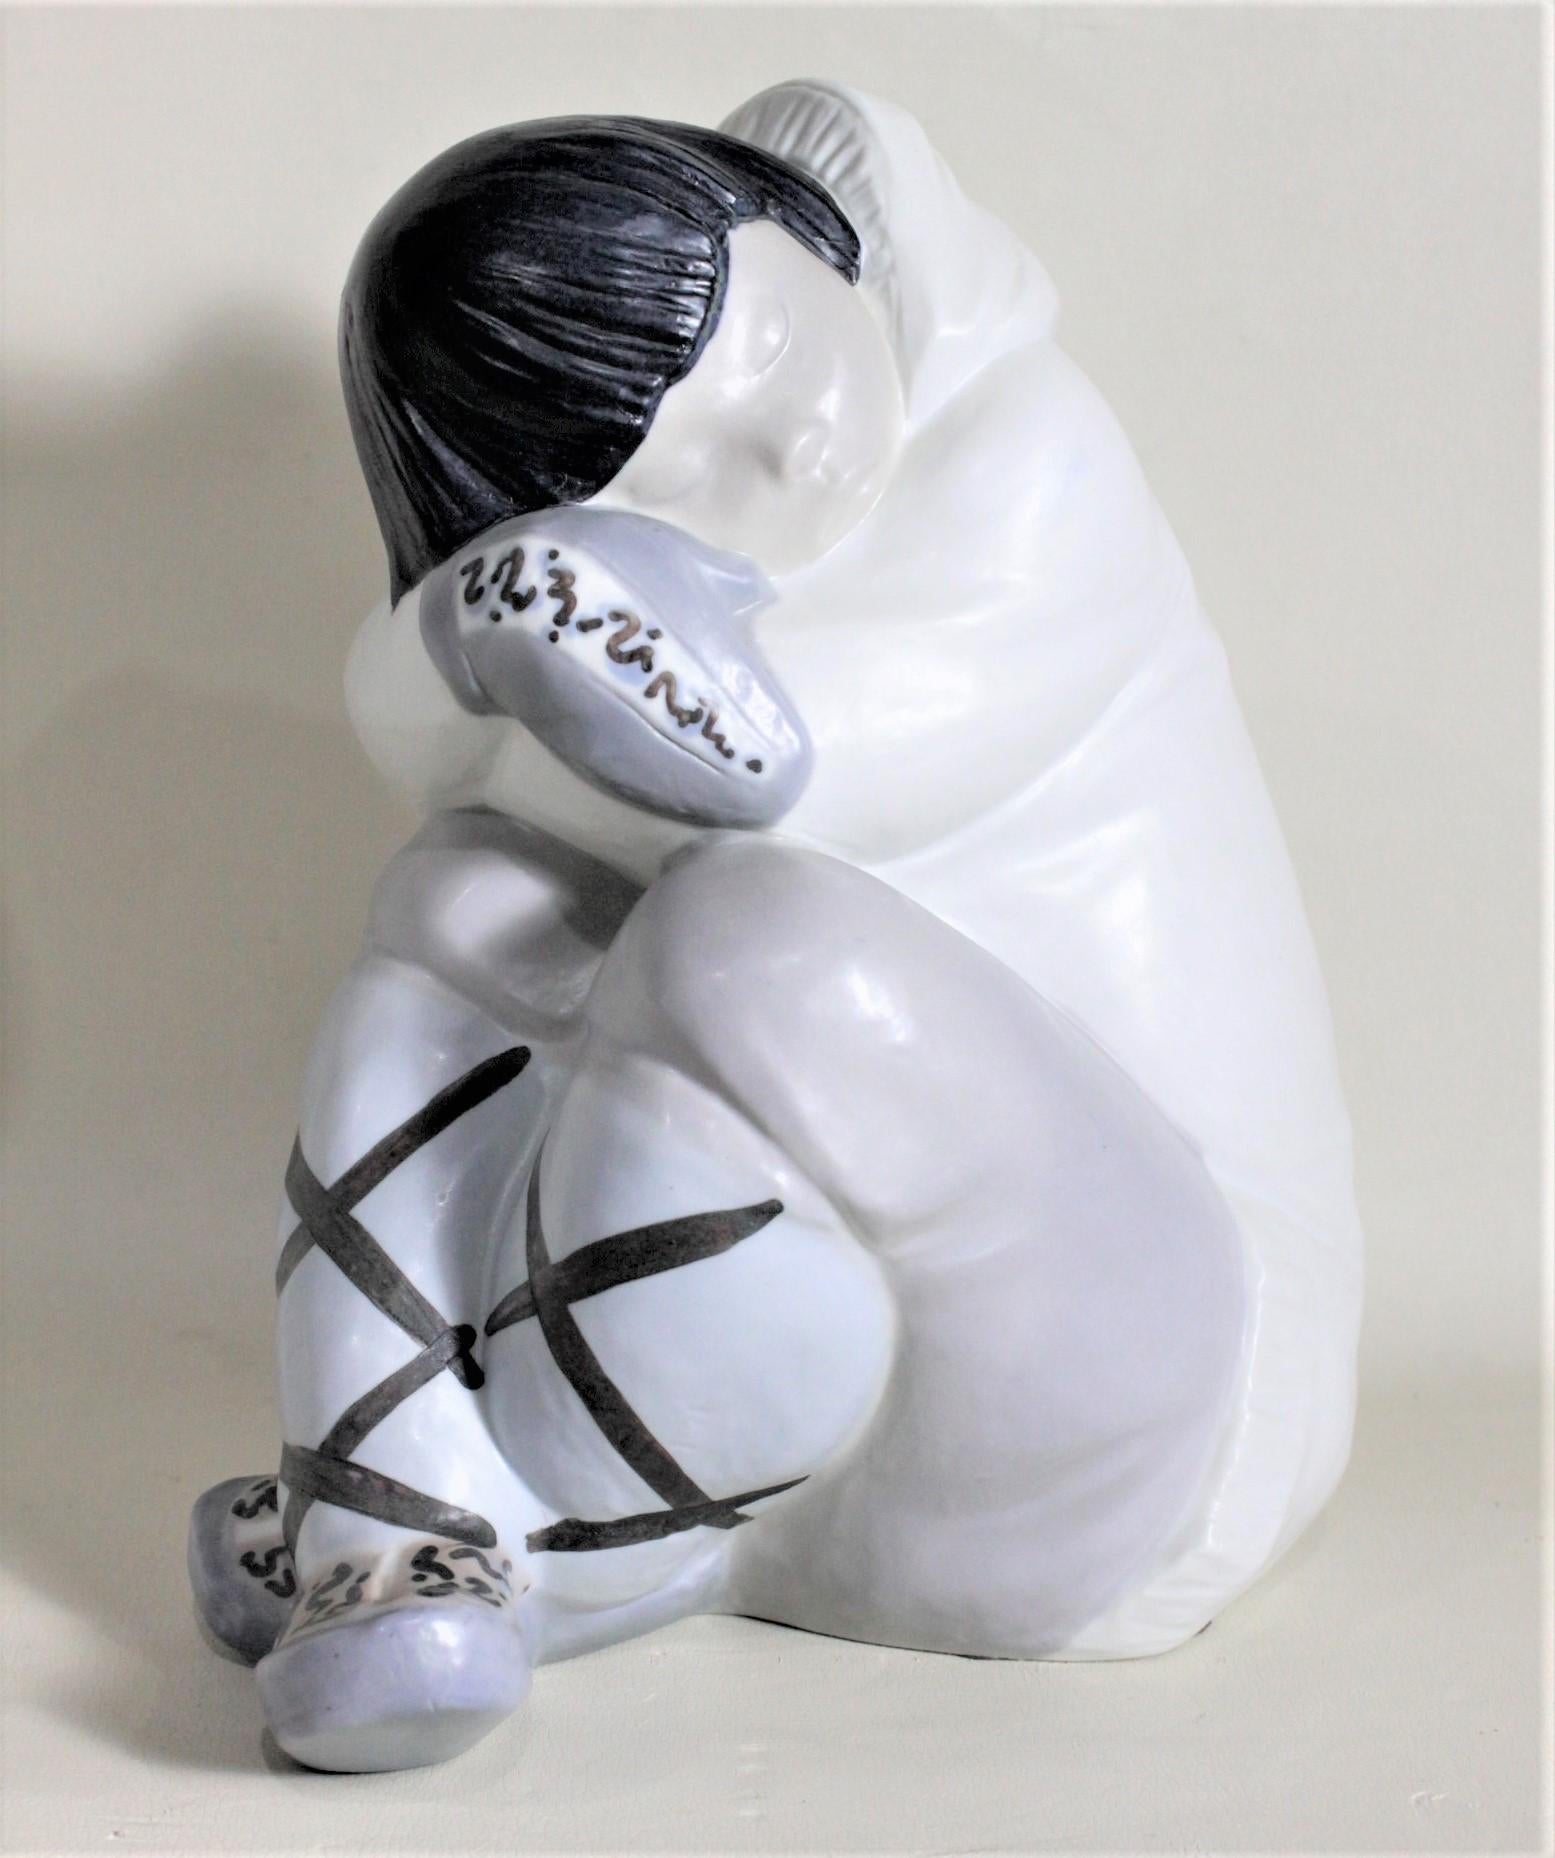 Diese sehr große, handbemalte Porzellanfigur wurde von der renommierten Firma Llladro in Spanien um 1985 hergestellt. Die Figur stellt einen Inuit-Jungen dar, der den Kopf in die Arme gestützt ein Nickerchen macht oder nachdenklich ist. Die